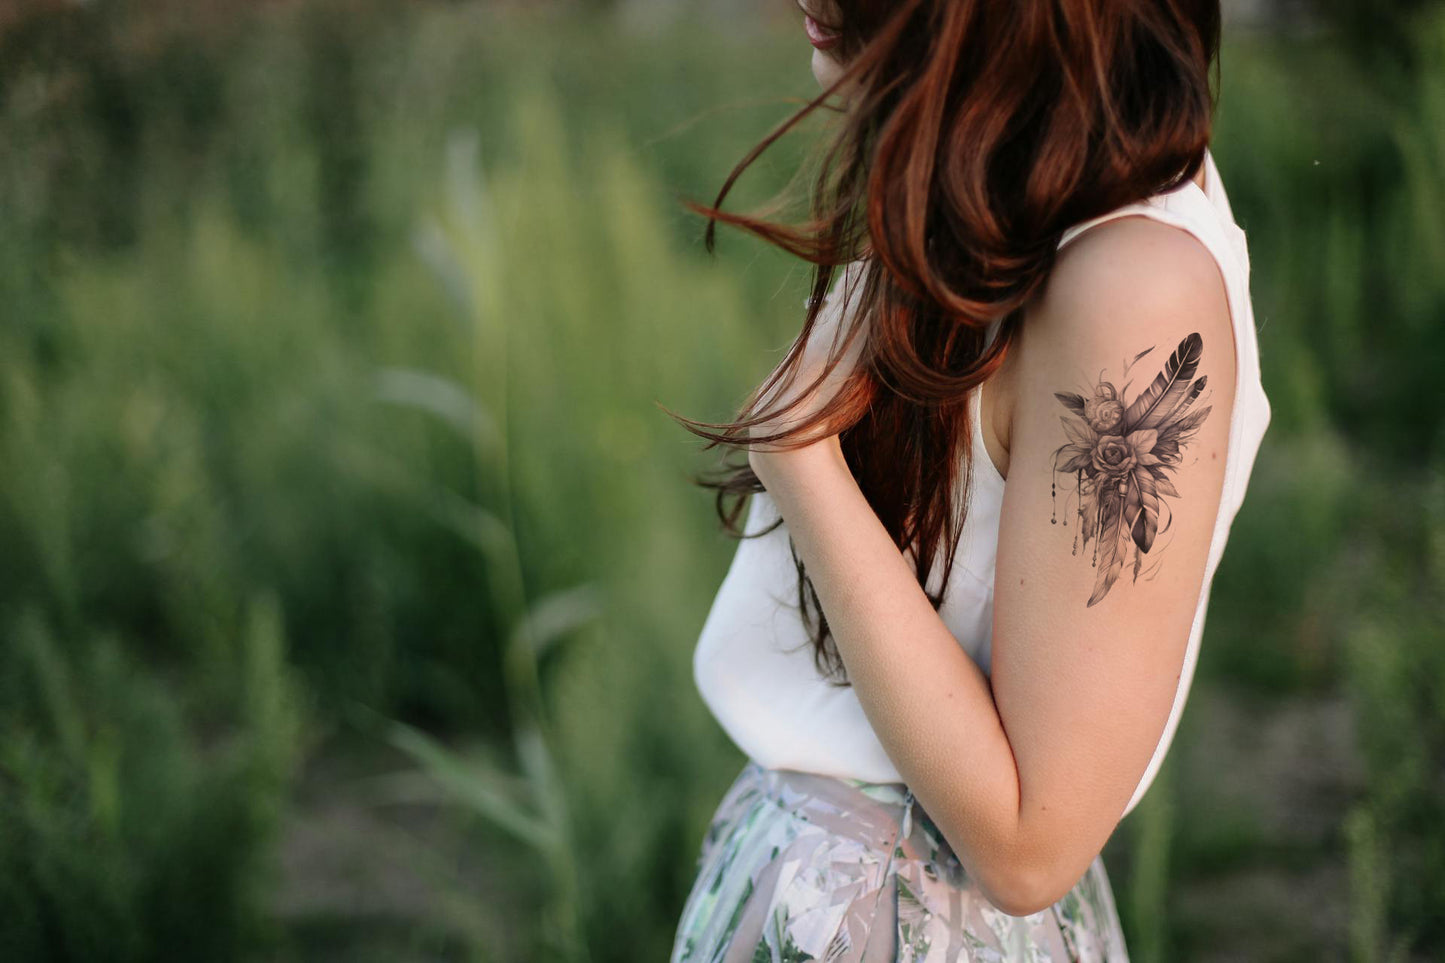 Blumen und Federn Tattoo-Design